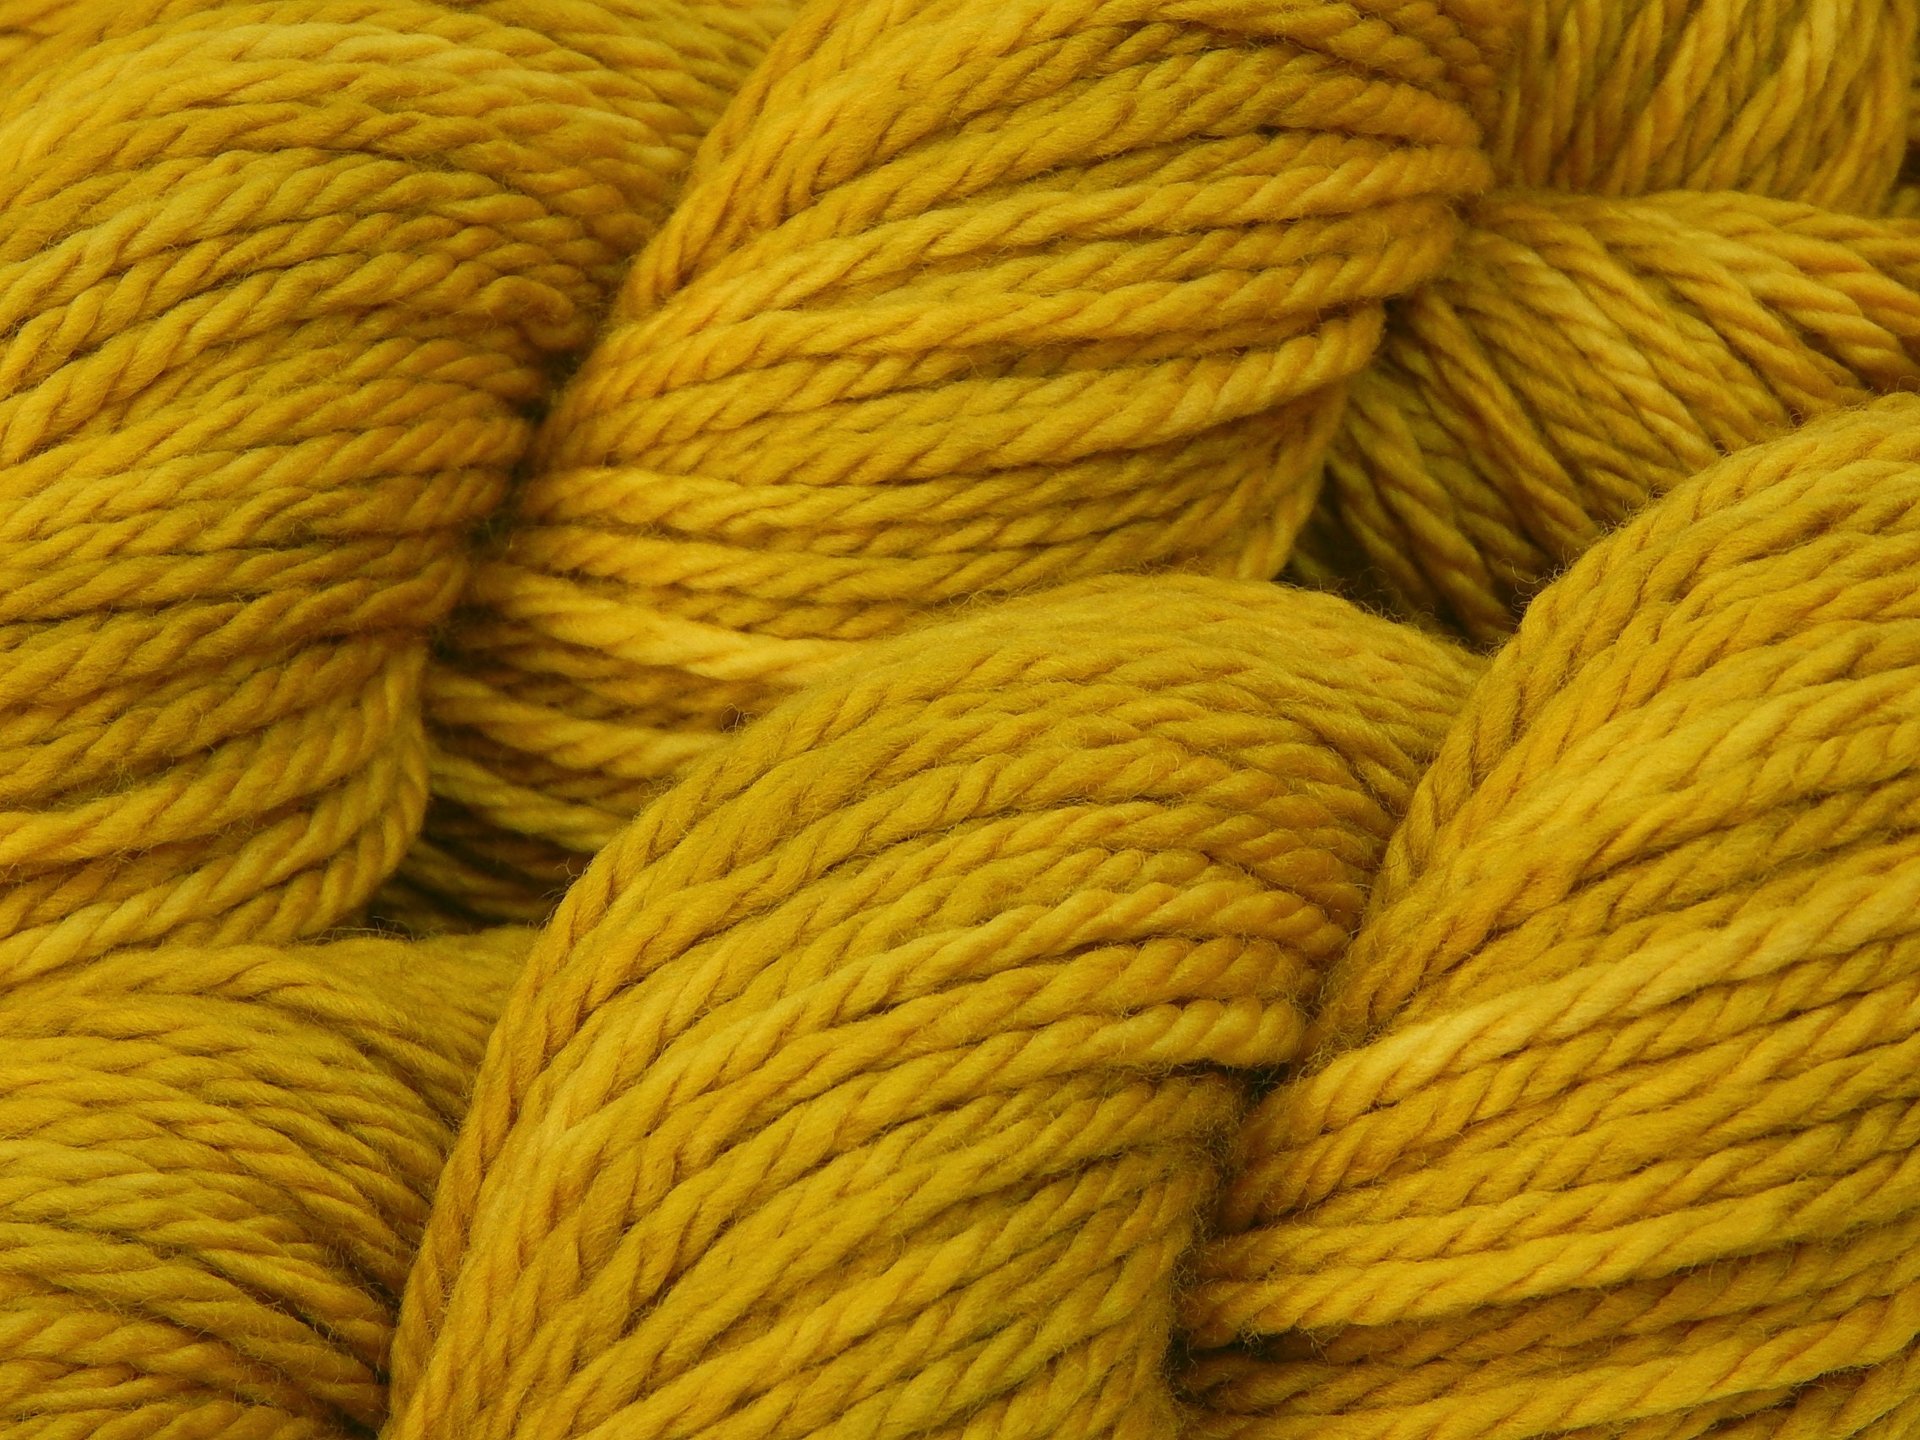 Hand Dyed Yarn, Bulky Weight Superwash Merino Wool - Honey Mustard - Thick Chunky Knitting Yarn, Tonal Yellow Gold Bulky Yarn